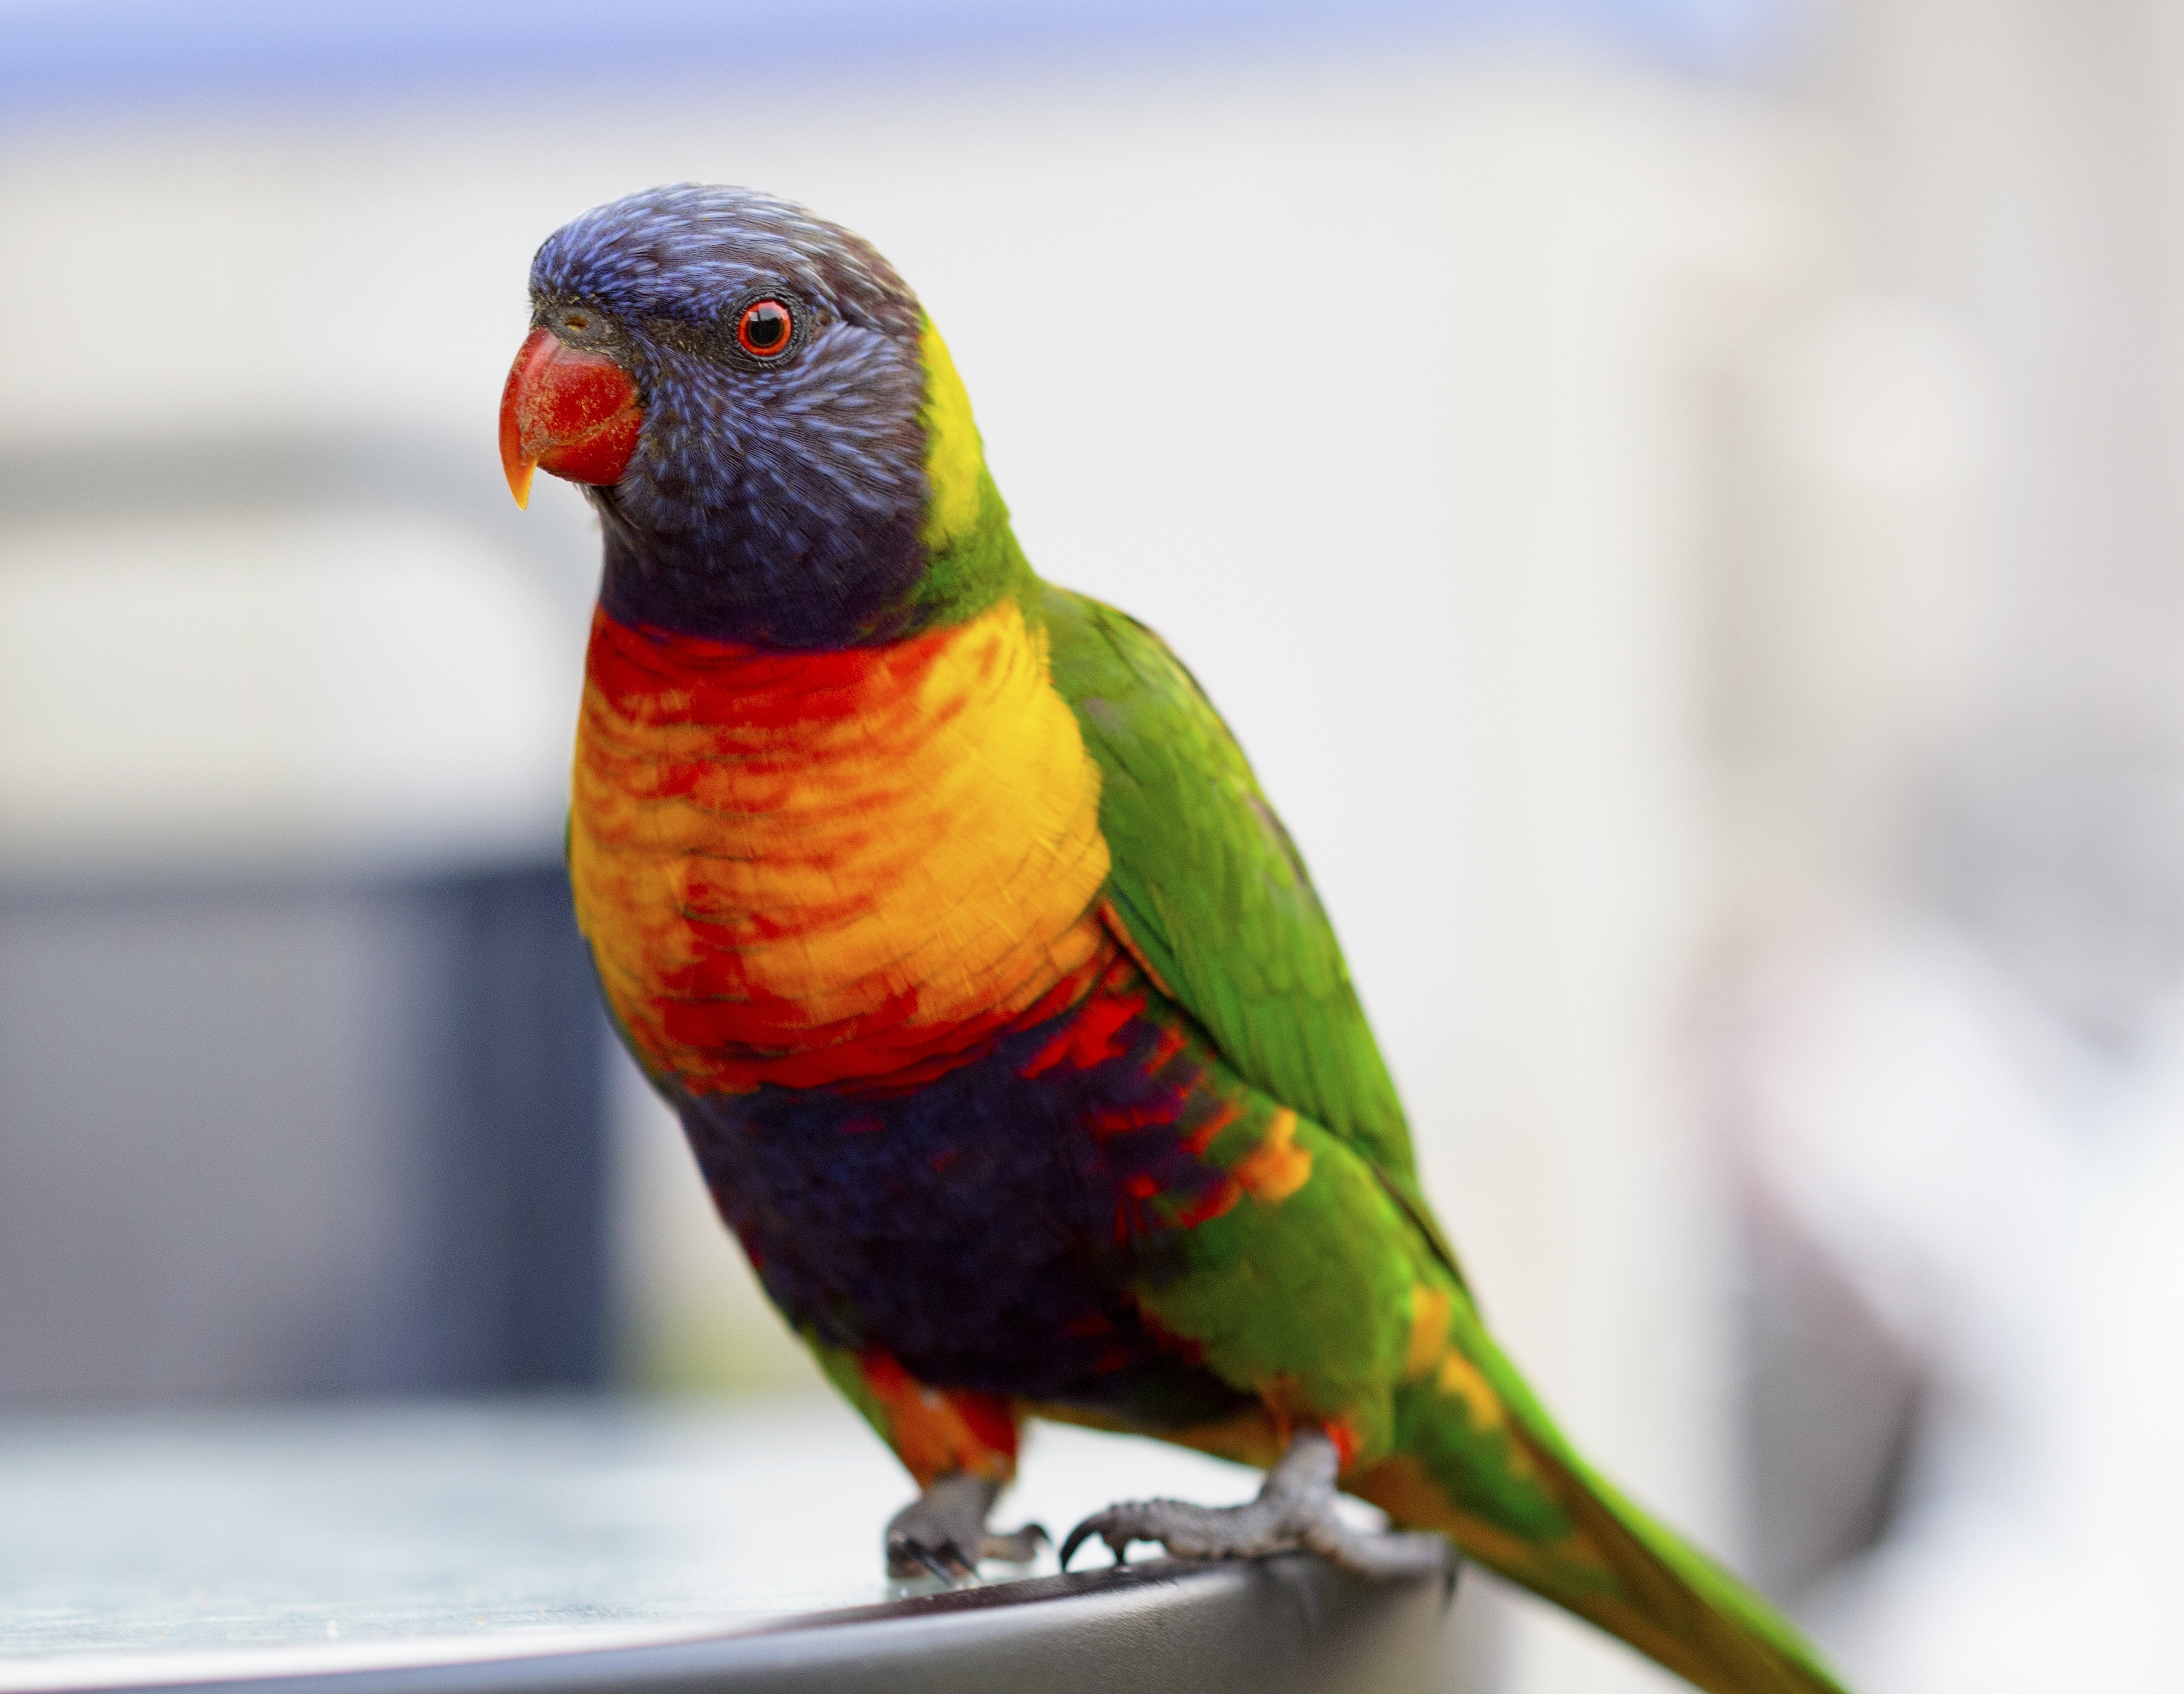 A colored pet parrot